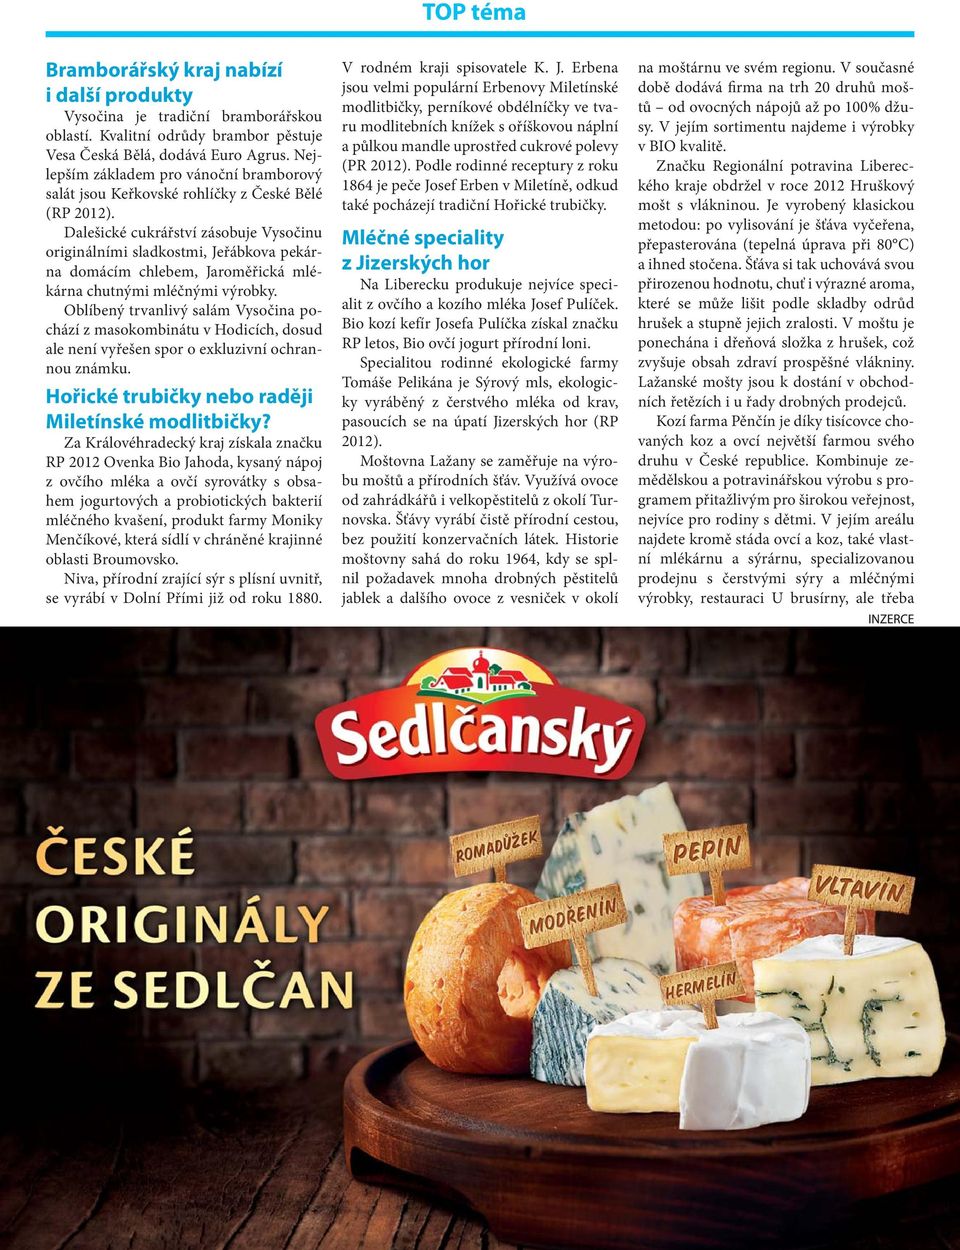 Dalešické cukrářství zásobuje Vysočinu originálními sladkostmi, Jeřábkova pekárna domácím chlebem, Jaroměřická mlékárna chutnými mléčnými výrobky.